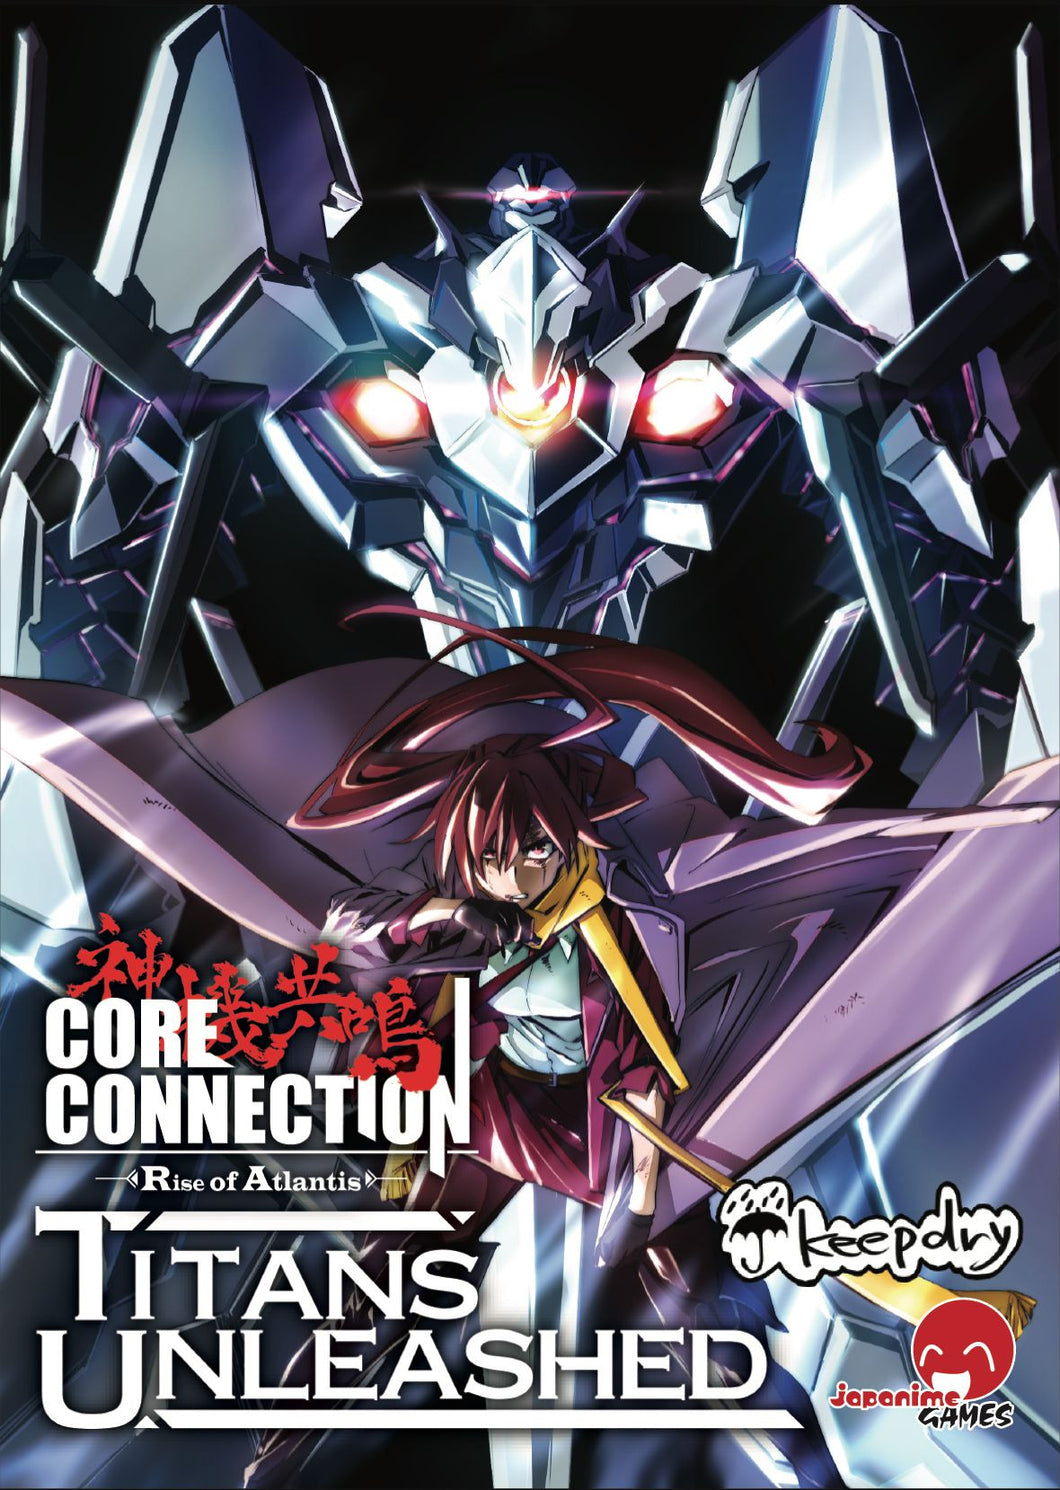 Core Connection - Titans Unleashed Expansion